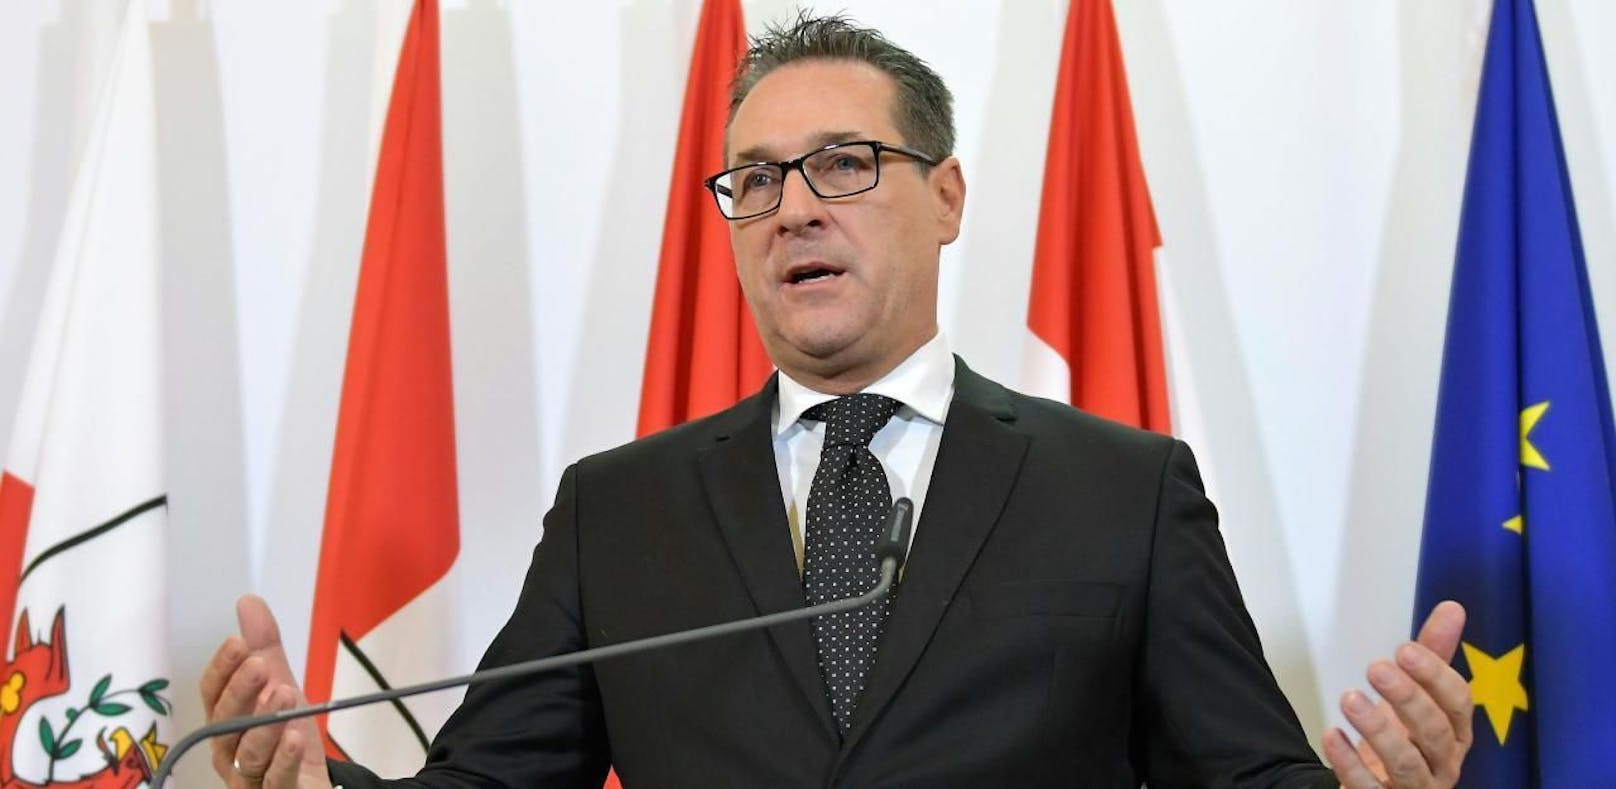 FPÖ-Vizekanzler Heinz-Christian Strache sieht sich in seinen Äußerungen missverstanden.